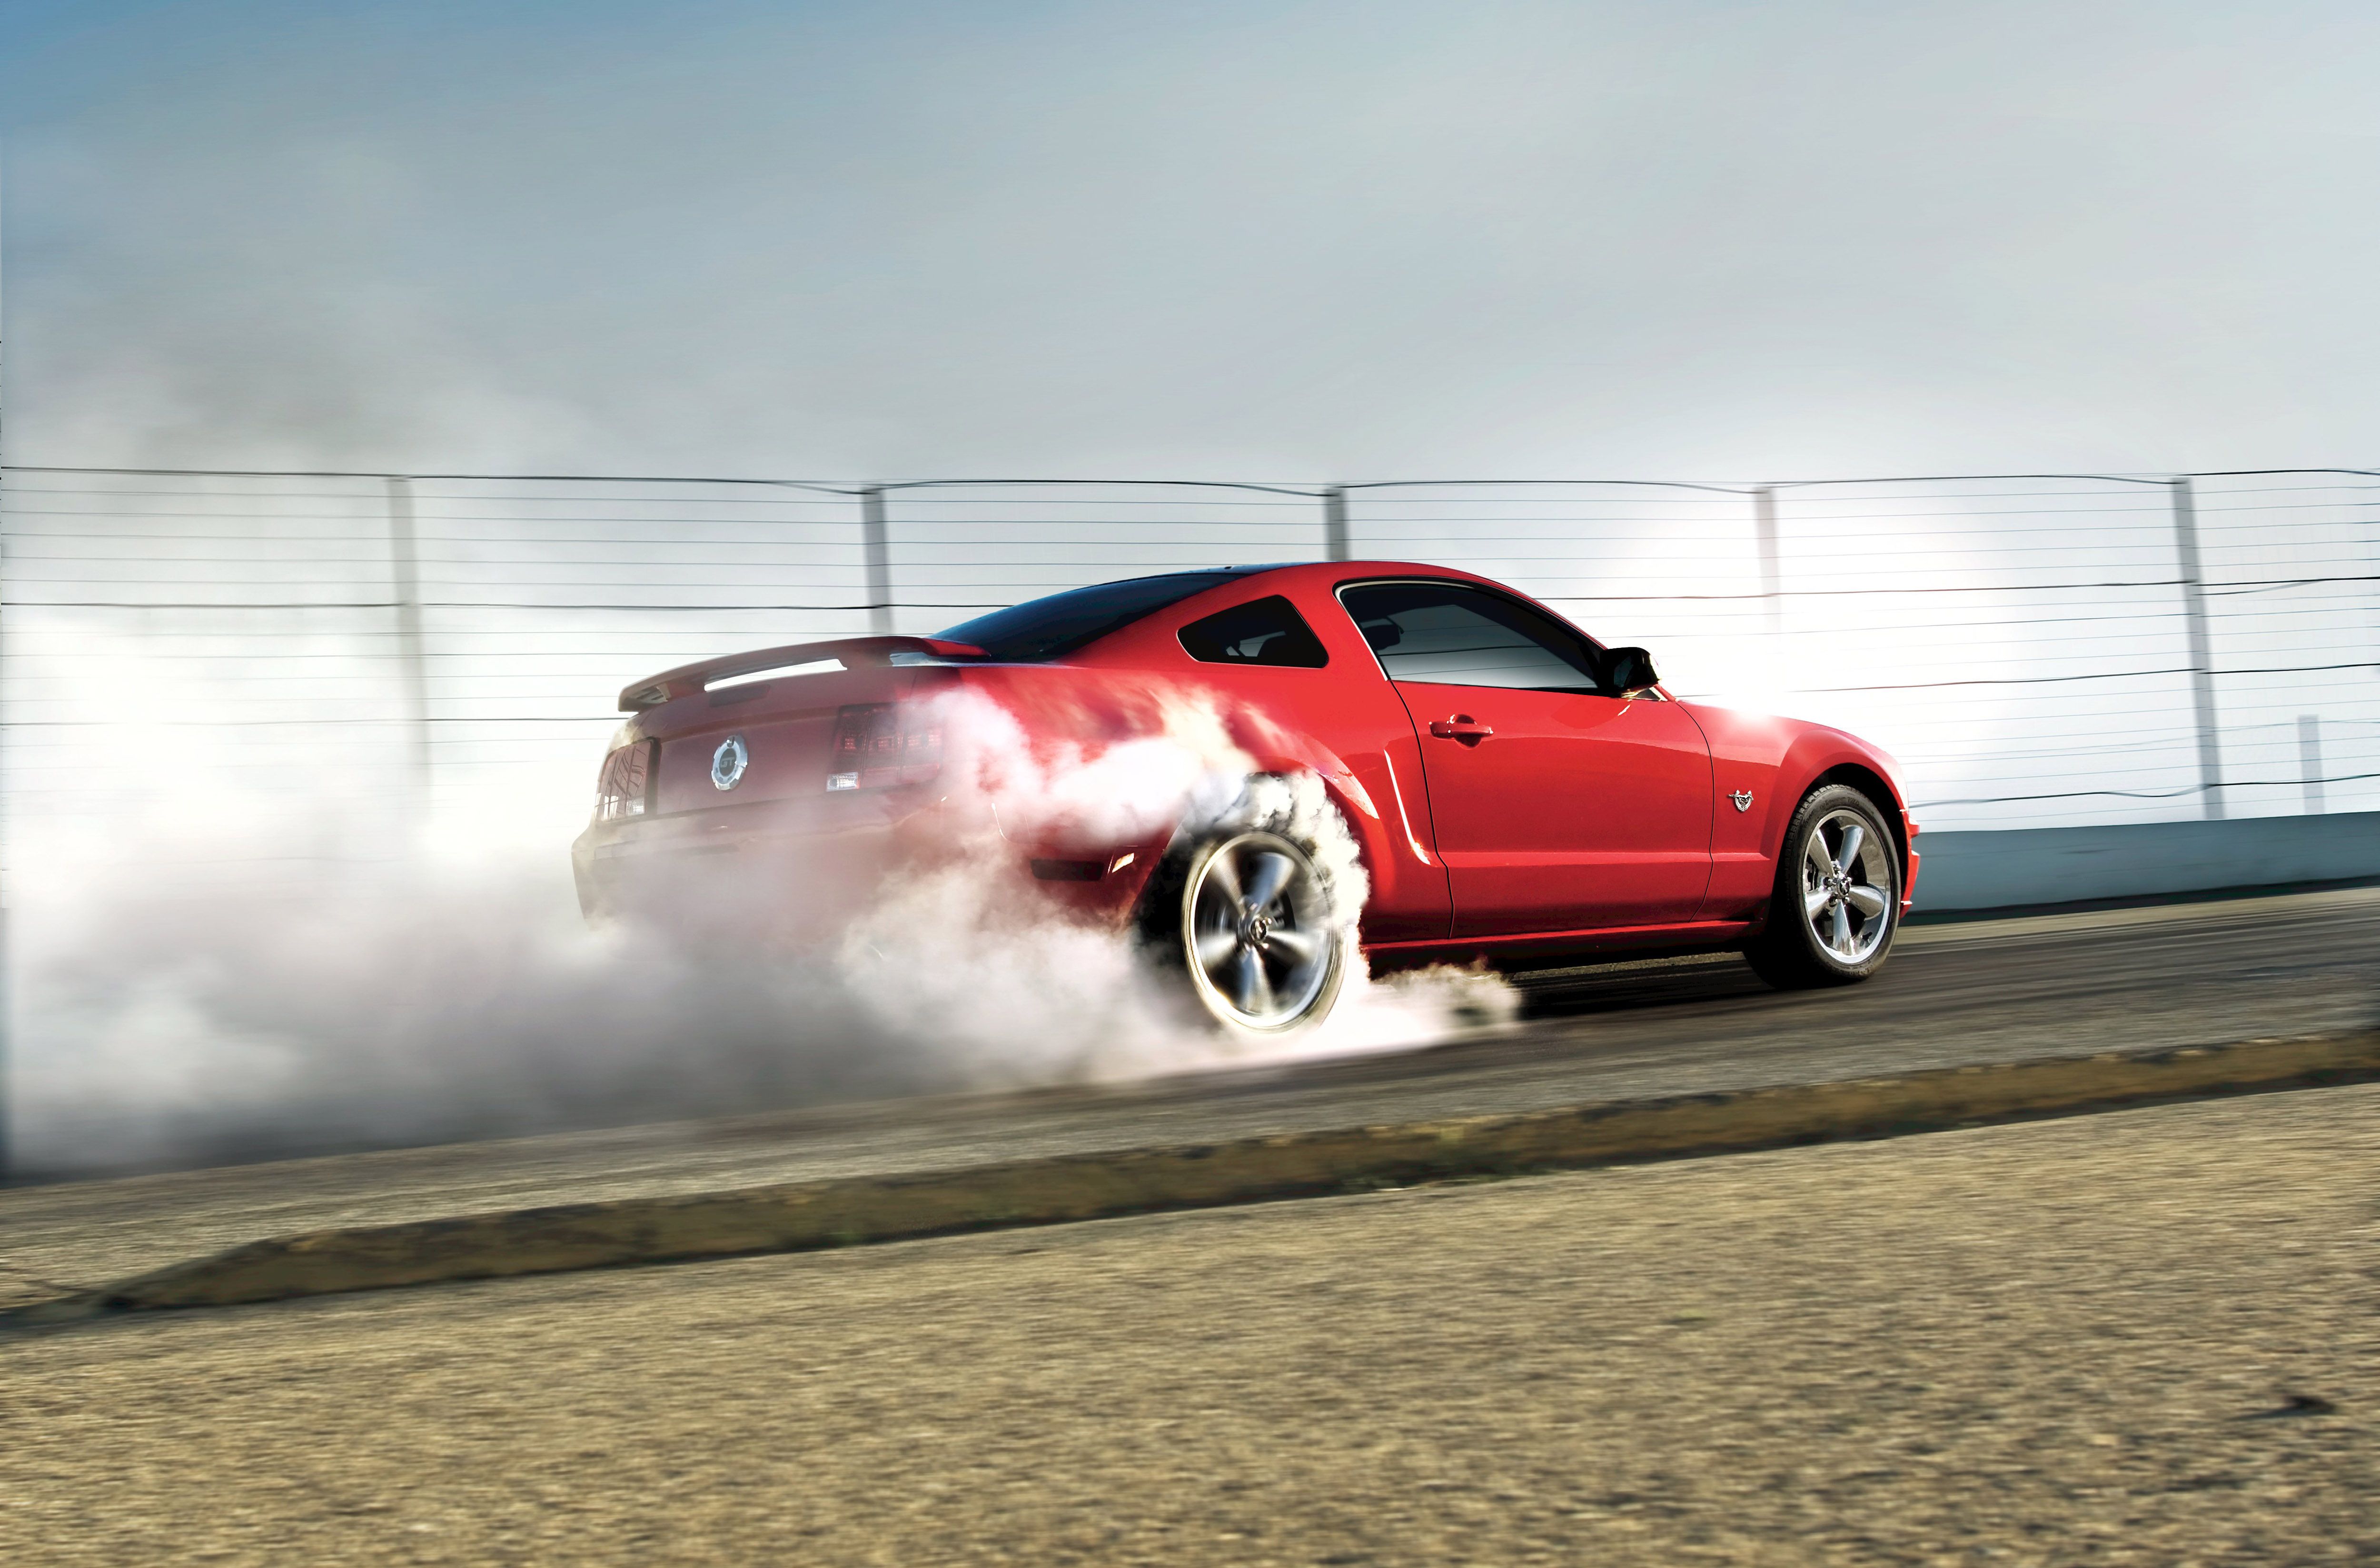 cars, smoke, races - desktop wallpaper